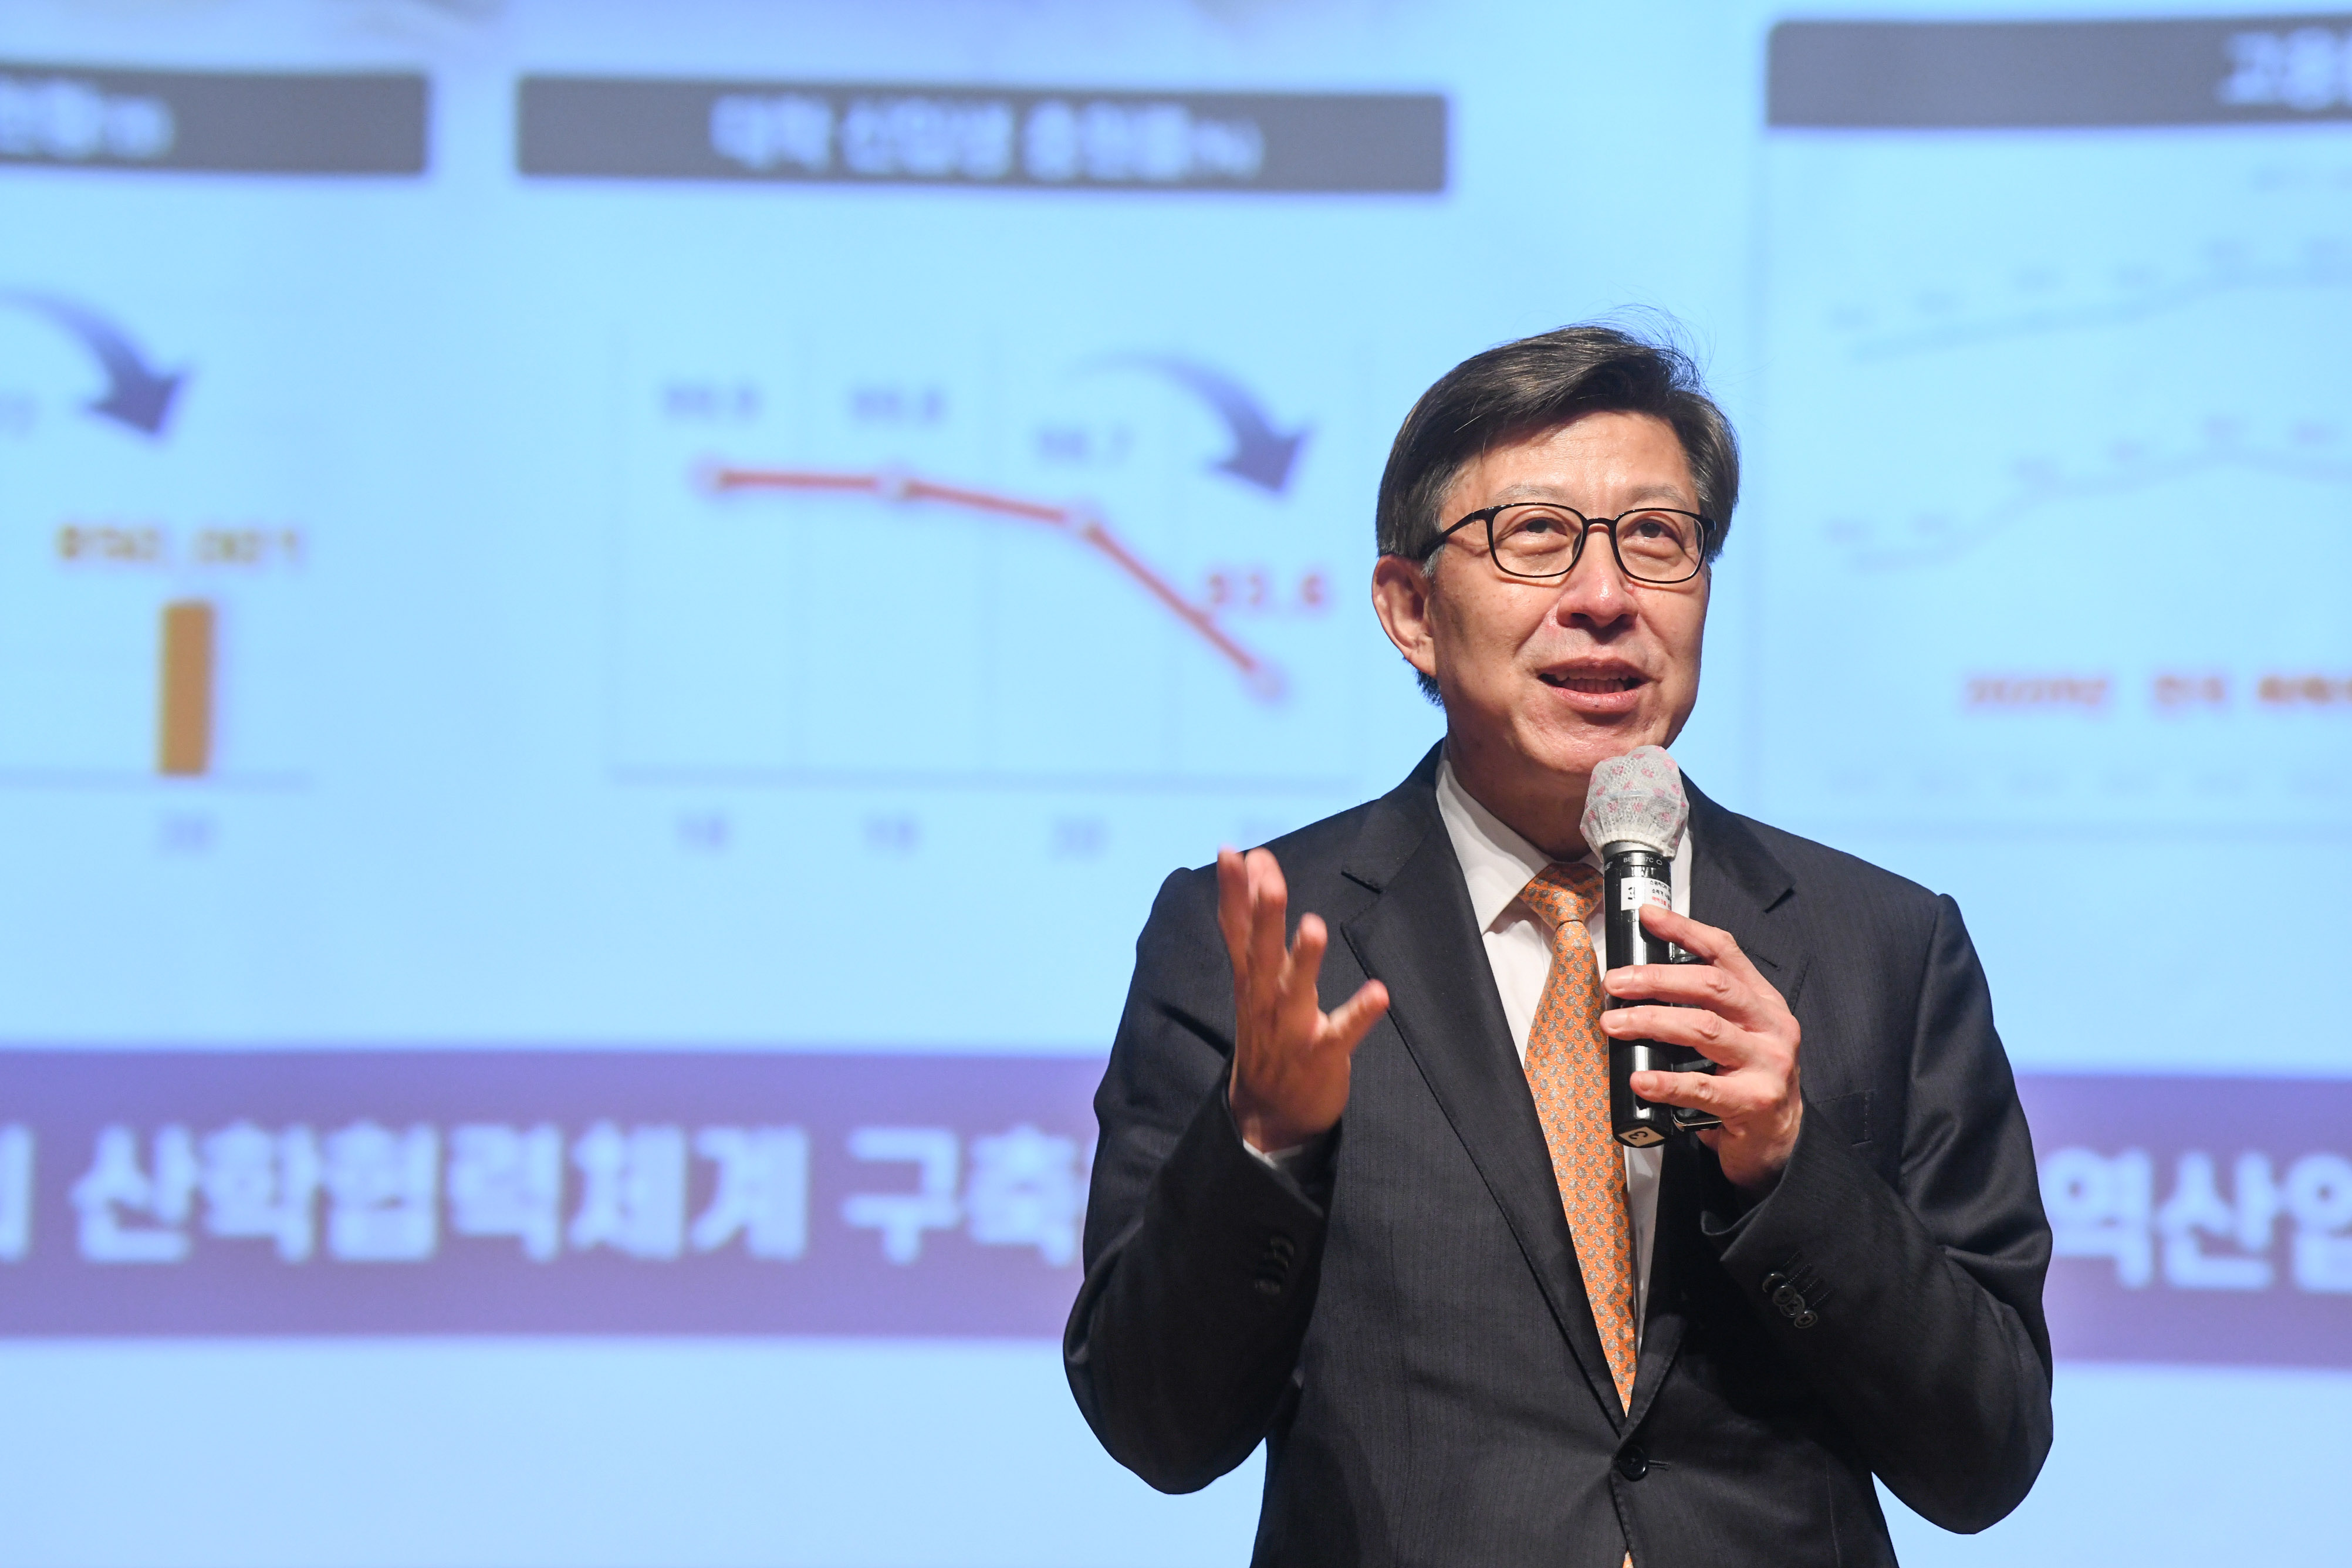 20210520 오픈캠퍼스 미팅 박형준 부산시장 특강 (동아대부민캠퍼스) 사진2